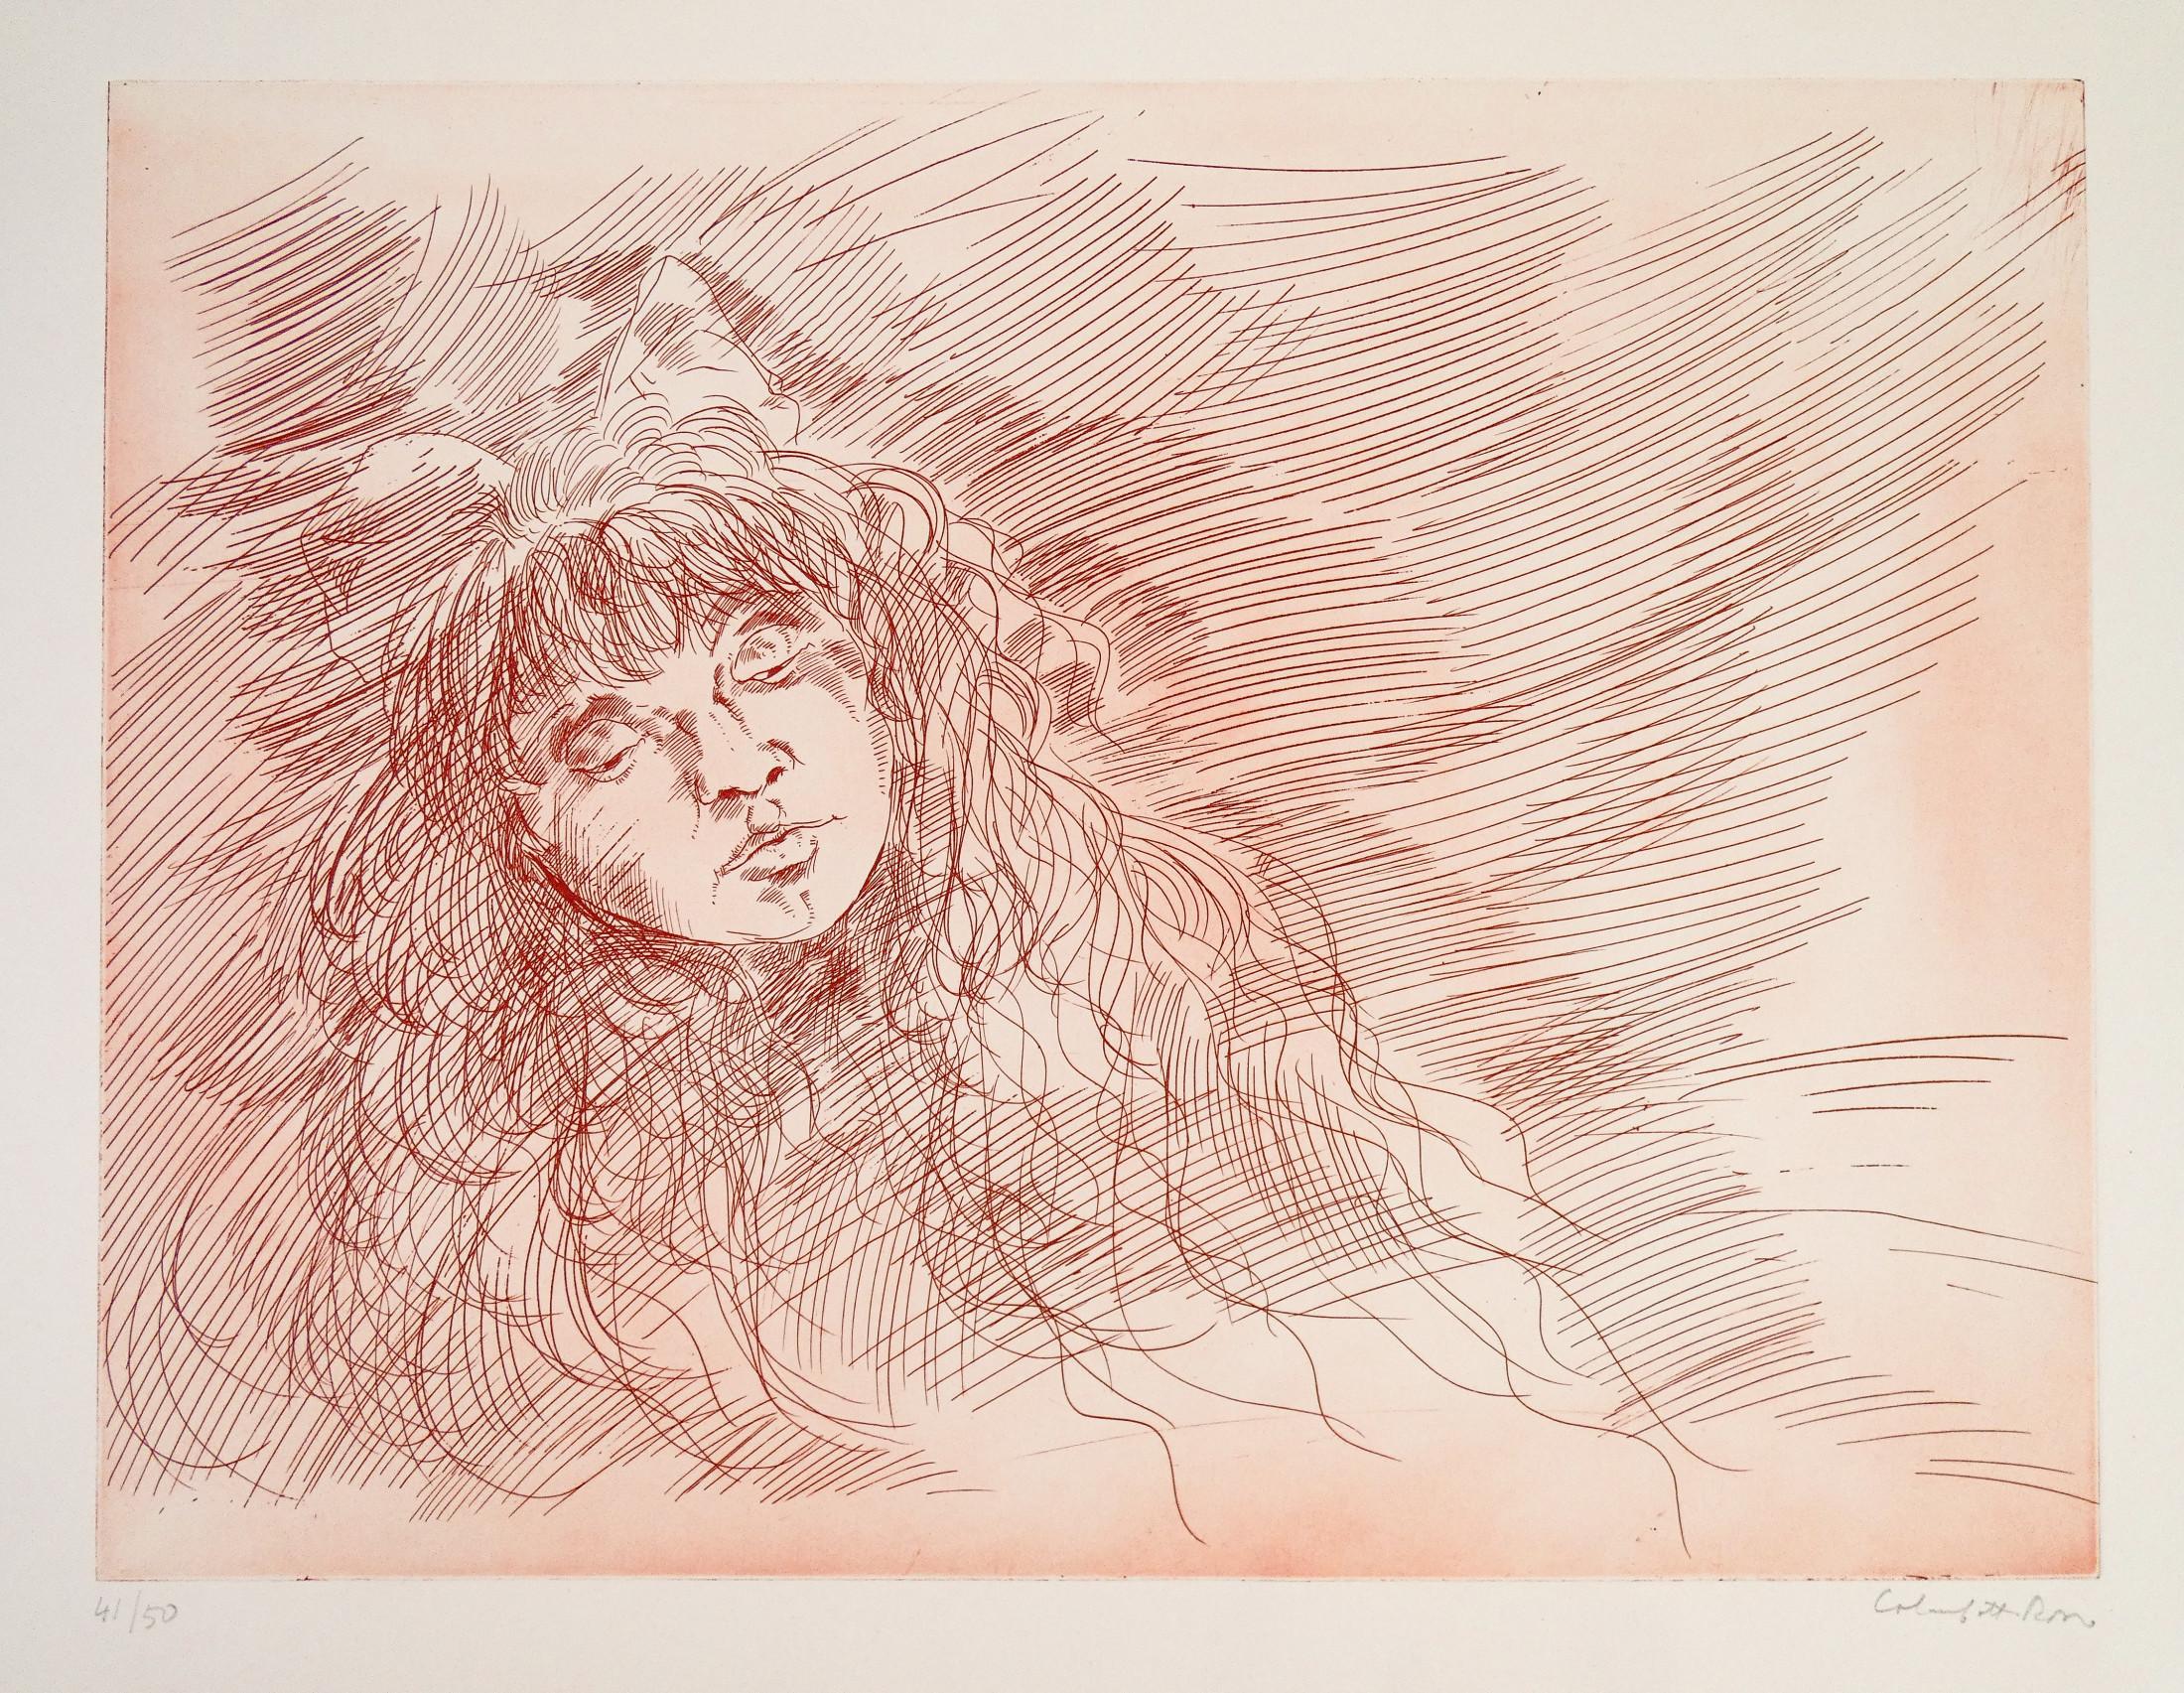 Lithographie von Enrico
ROTE KOLUMBINE
Weibliches Gesicht.
Nummeriert 41/50 und signiert
von Hand durch den Autor.

URSPRUNG
Italien

PERIOD
1970s

AUTOR
Enrico COLOMBOTTO
ROT (1925-2013)

TECHNIK
Lithographie

ABMESSUNGEN
42 x 32